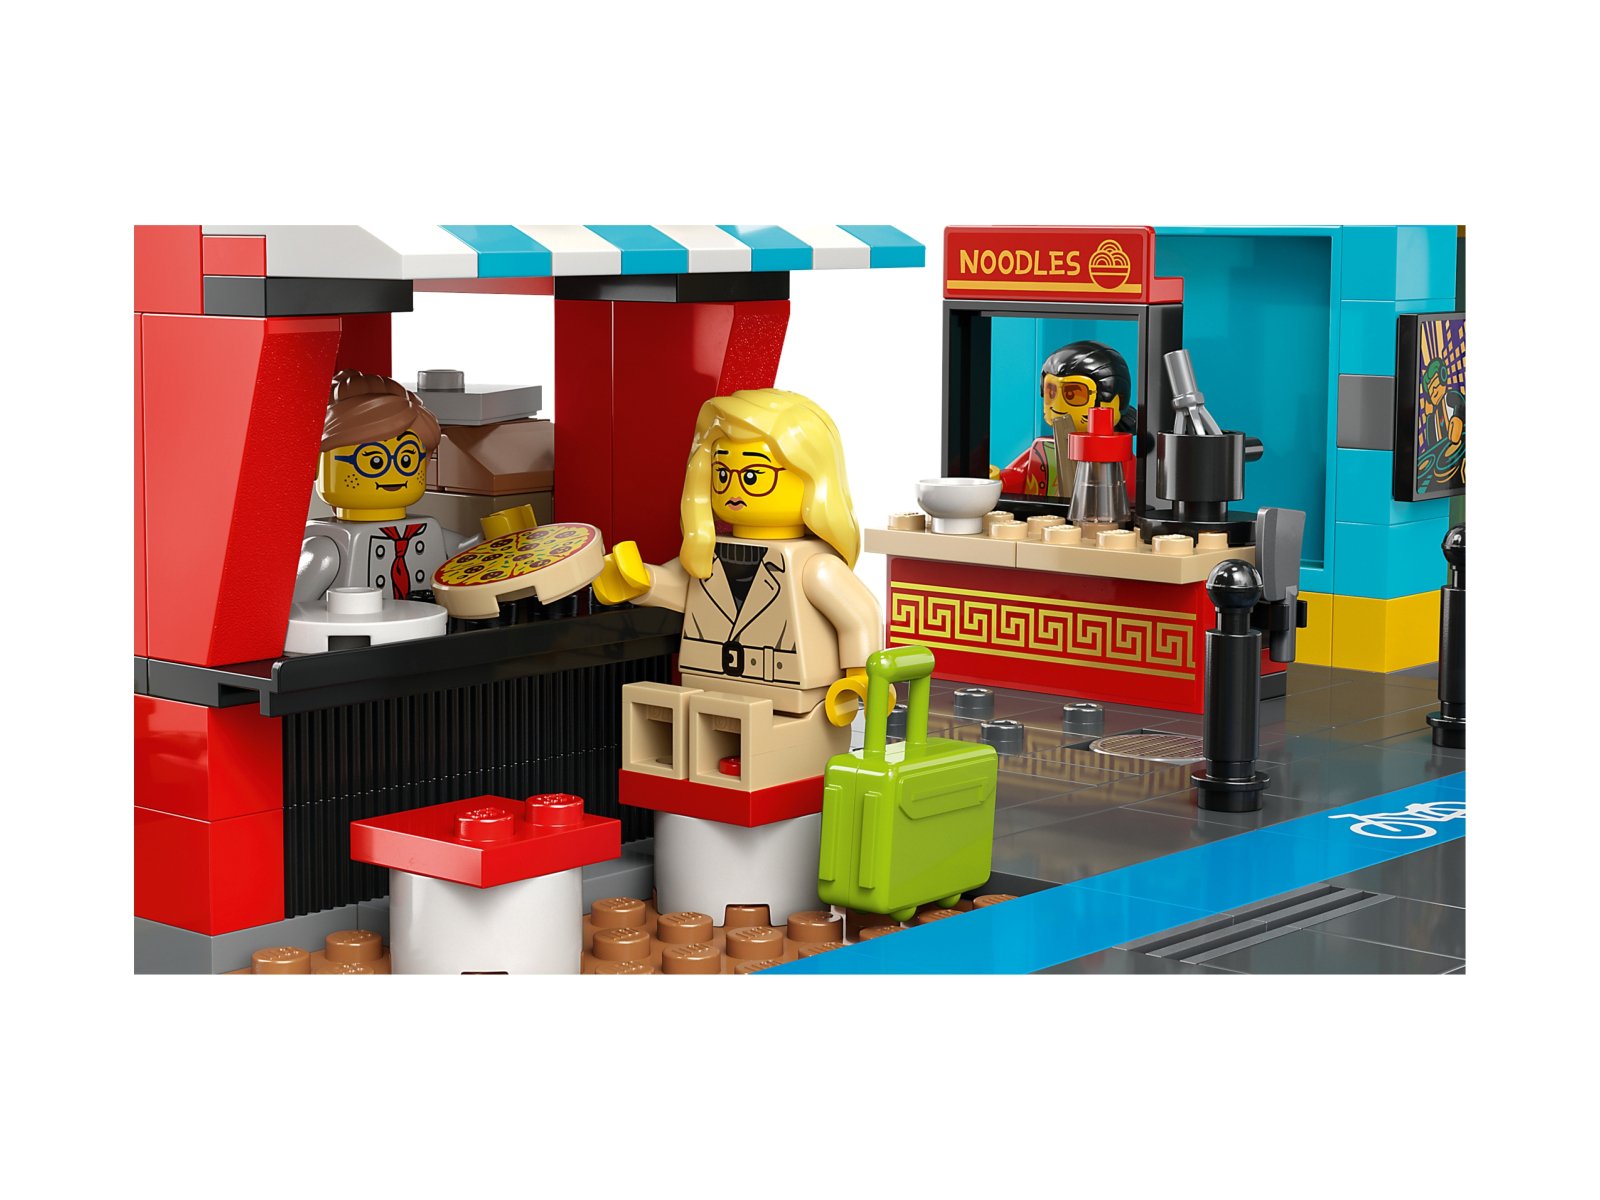 LEGO 60380 City Śródmieście